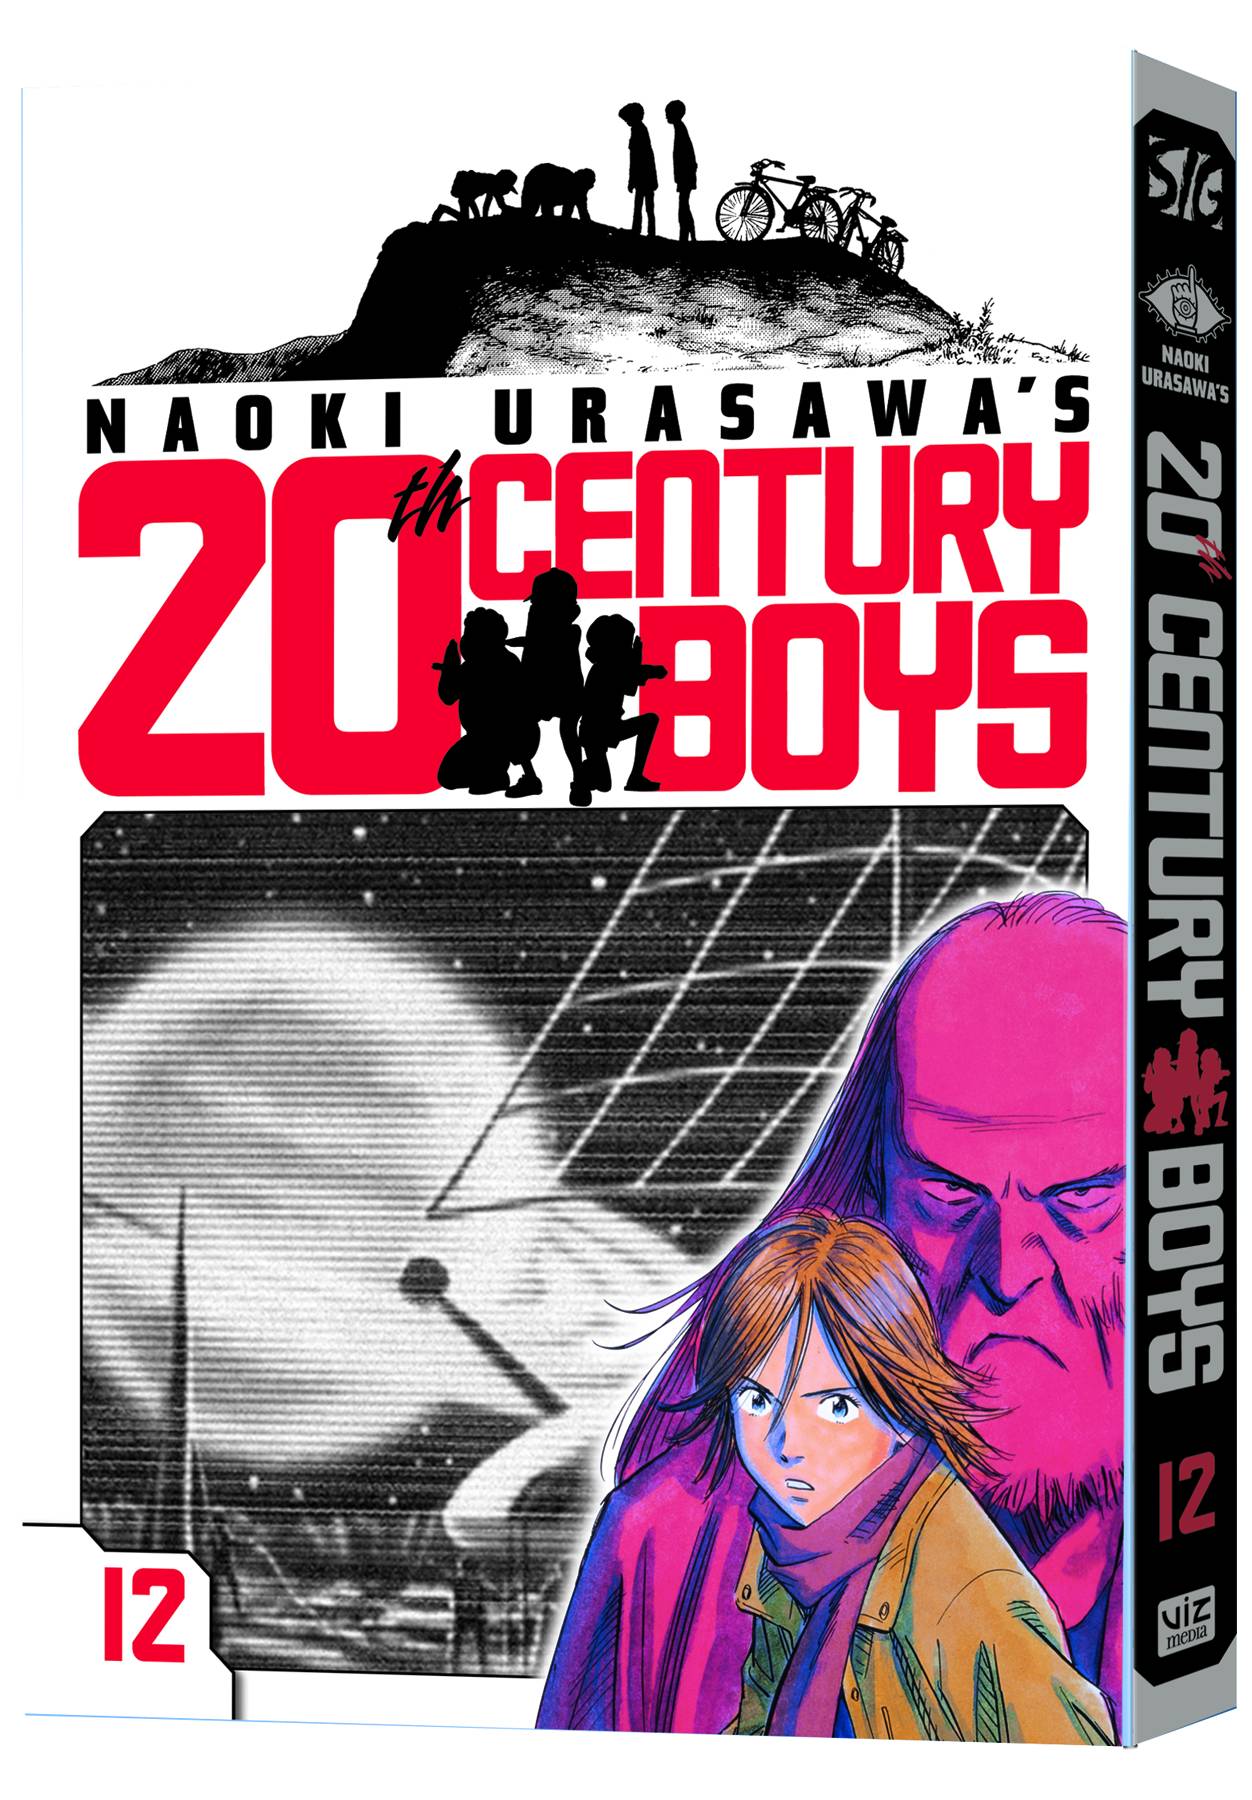 NAOKI URASAWA 20TH CENTURY BOYS GN VOL 12 (C: 1-0-